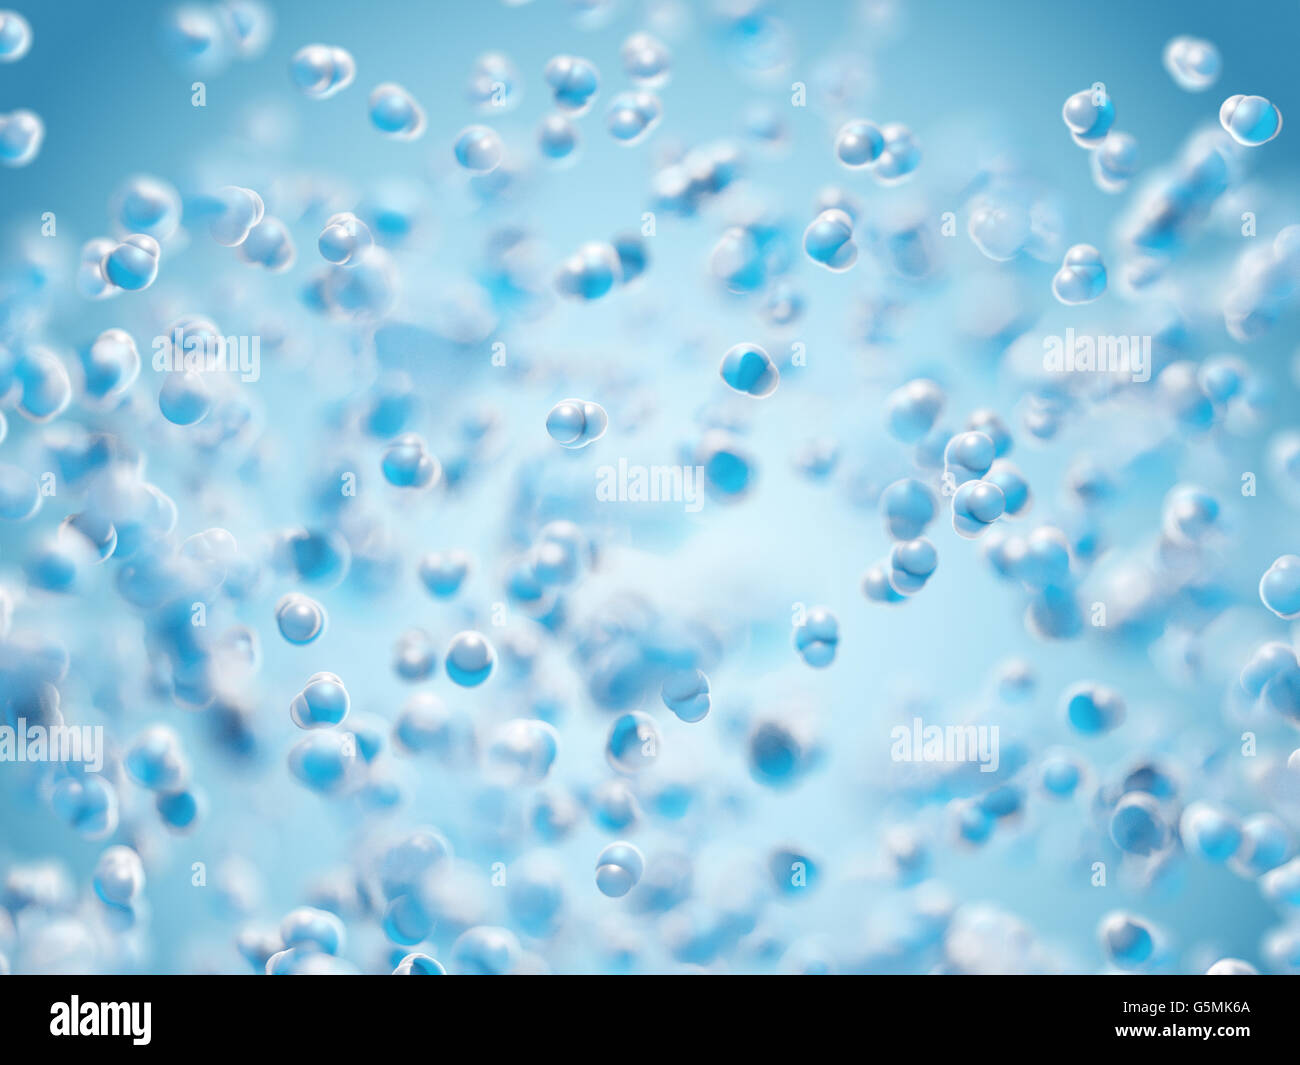 Gota de agua pura. El agua es un compuesto químico que contiene uno de dos átomos de hidrógeno y oxígeno Foto de stock